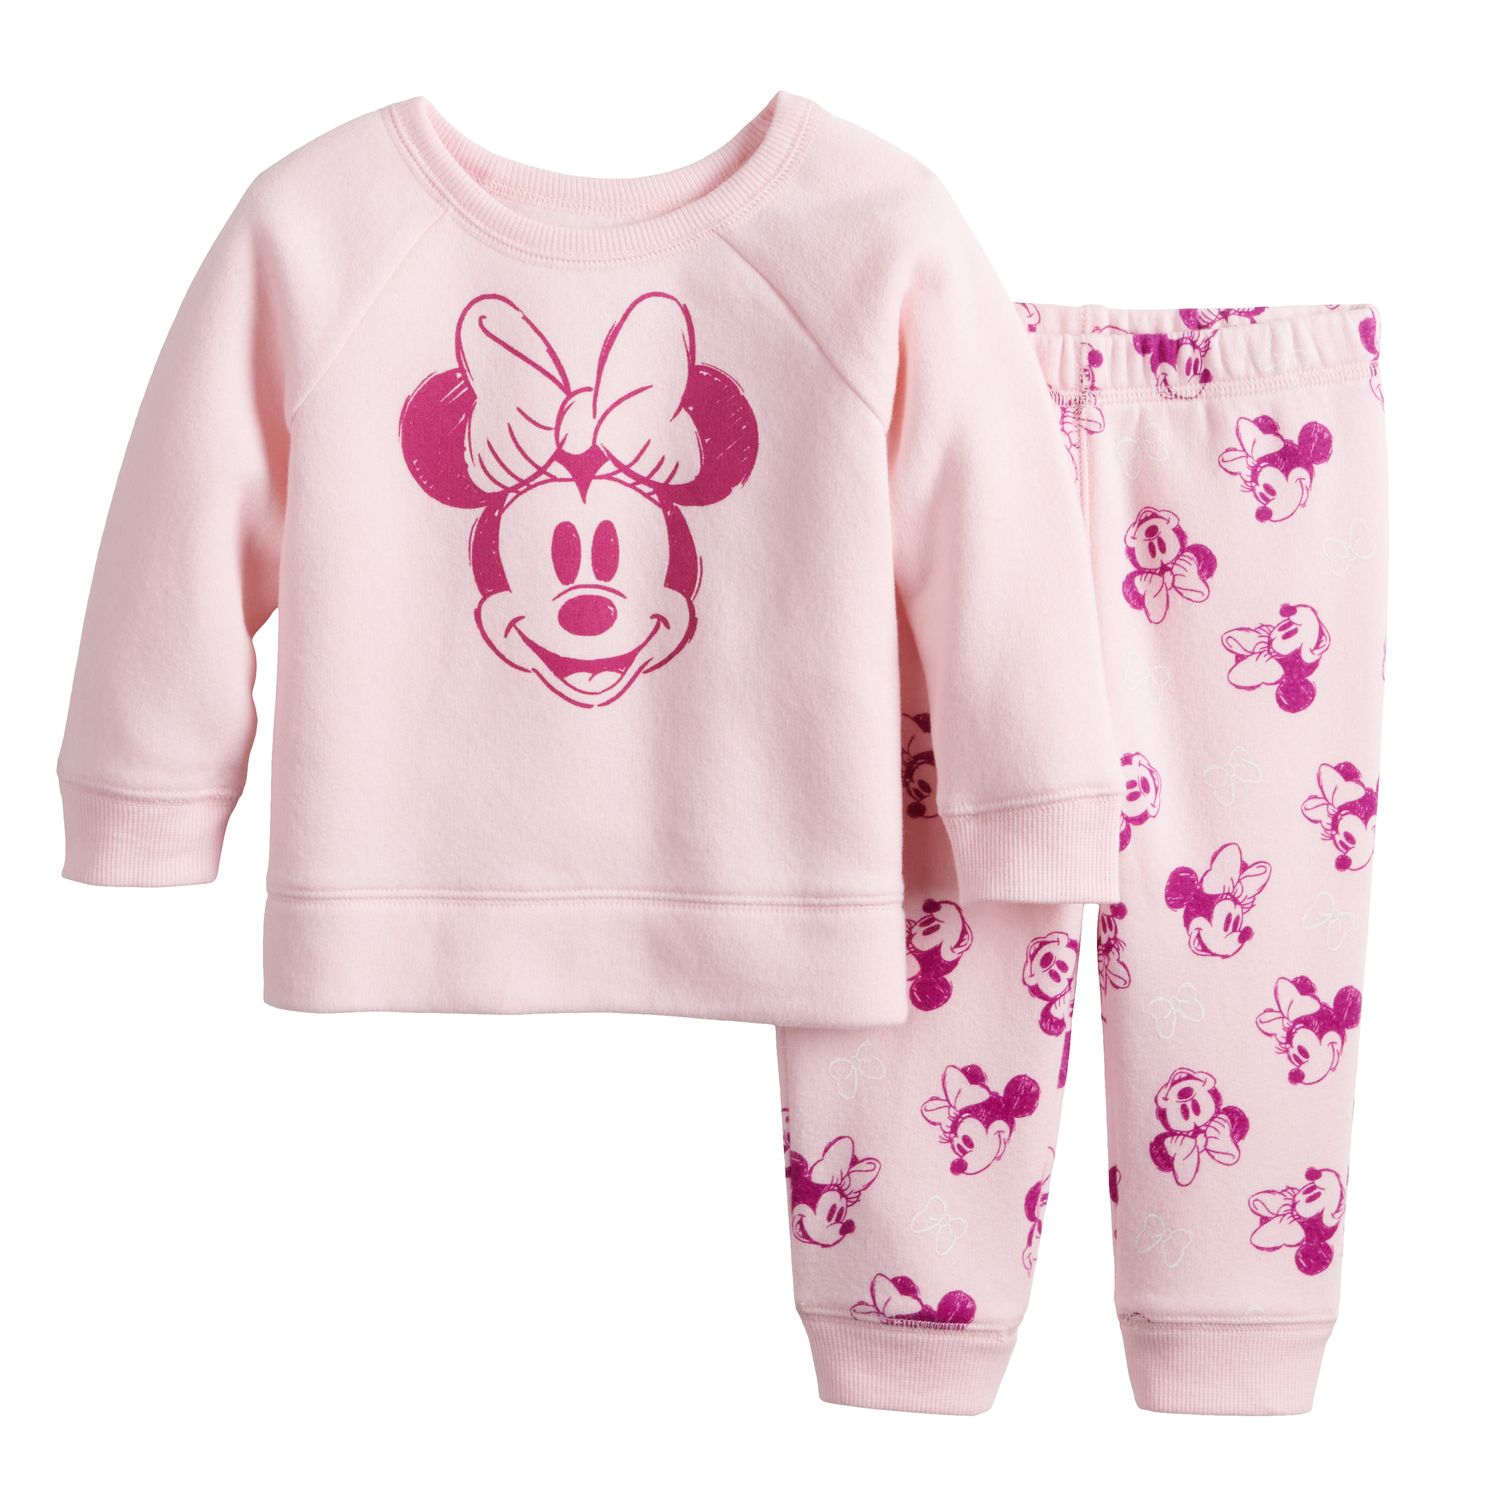 minnie mouse infant clothes